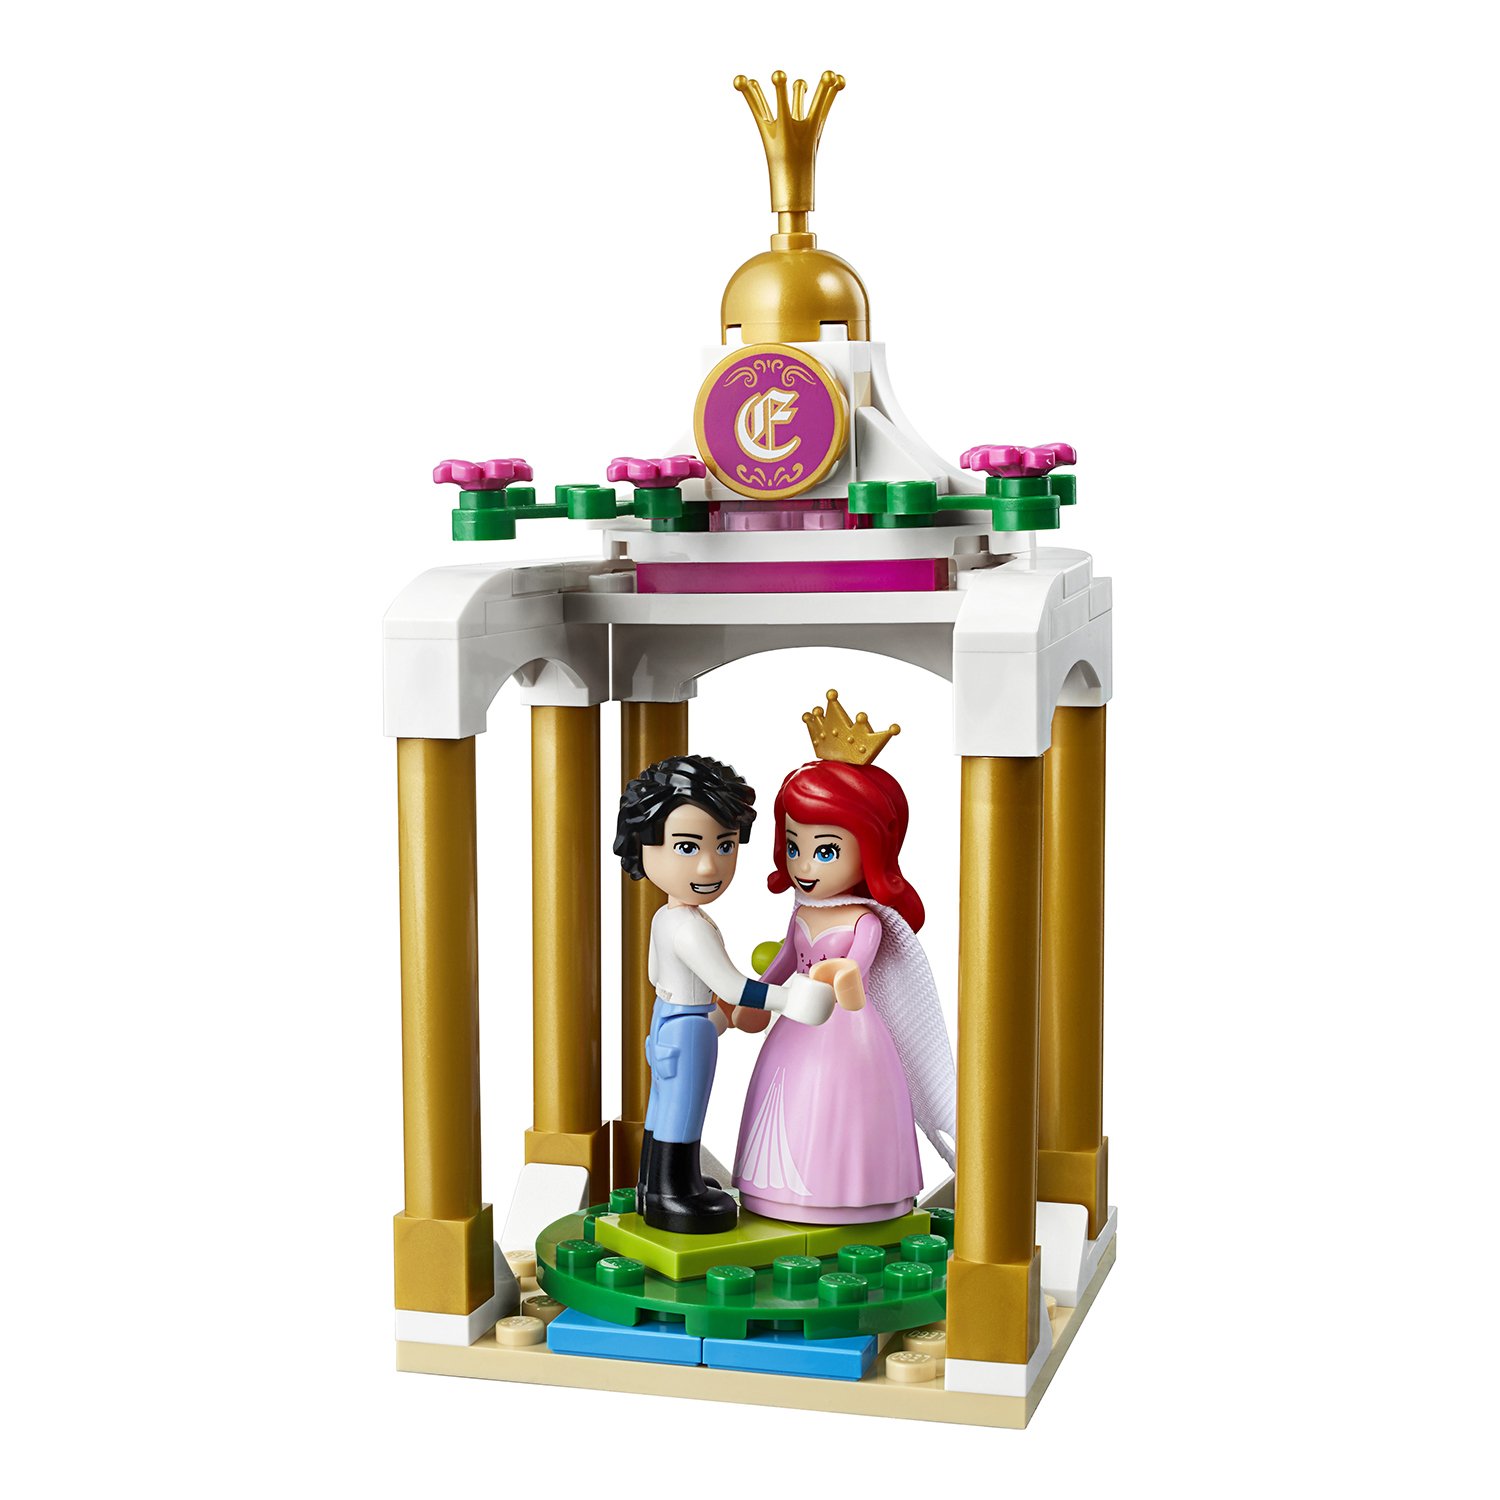 Конструктор LEGO Disney Princess «Королевский корабль Ариэль» 41153